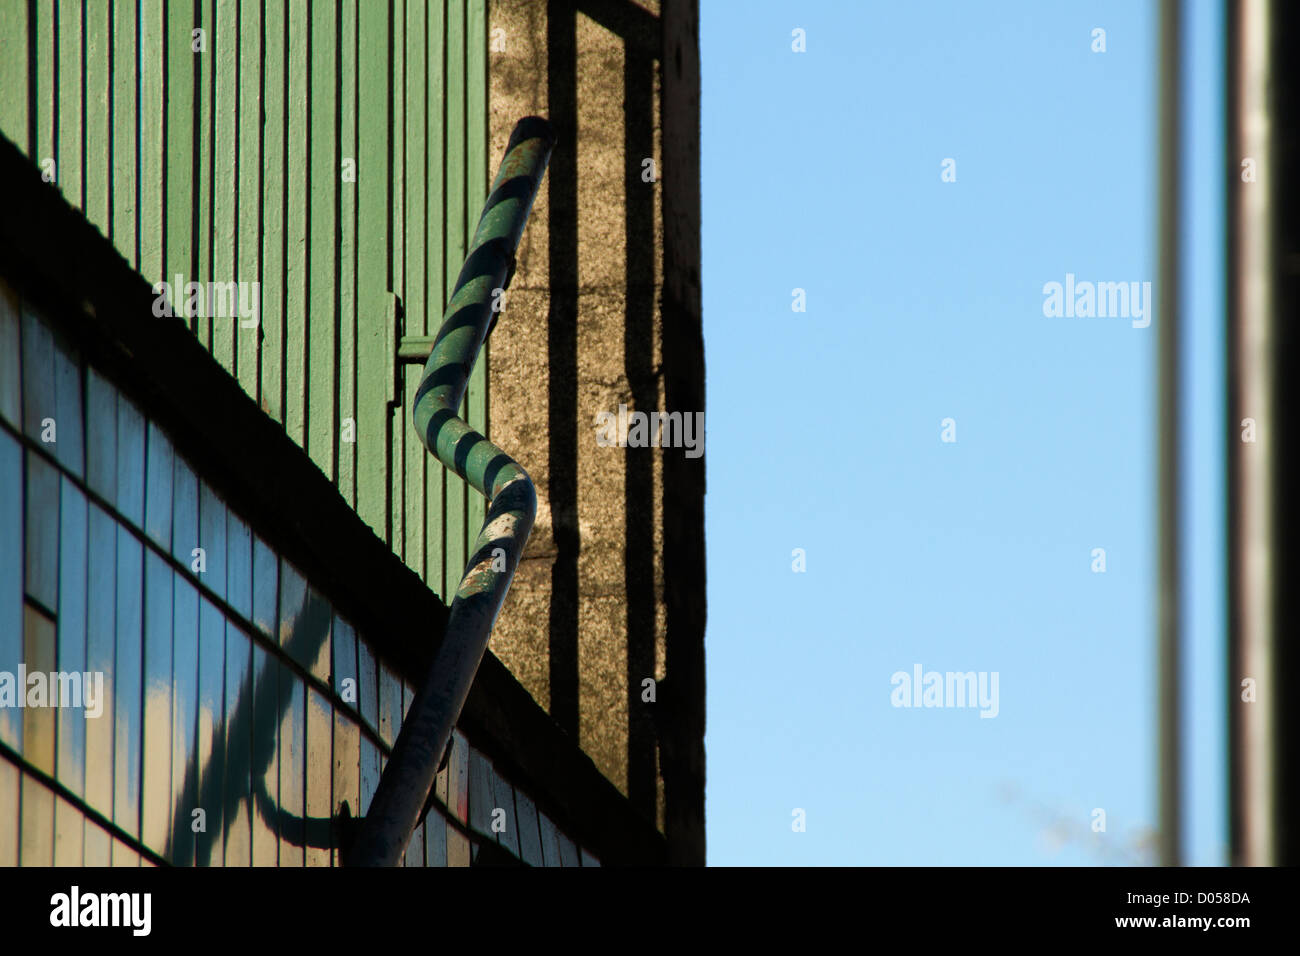 La metropolitana di ringhiere, cielo blu chiaro, Foto Stock